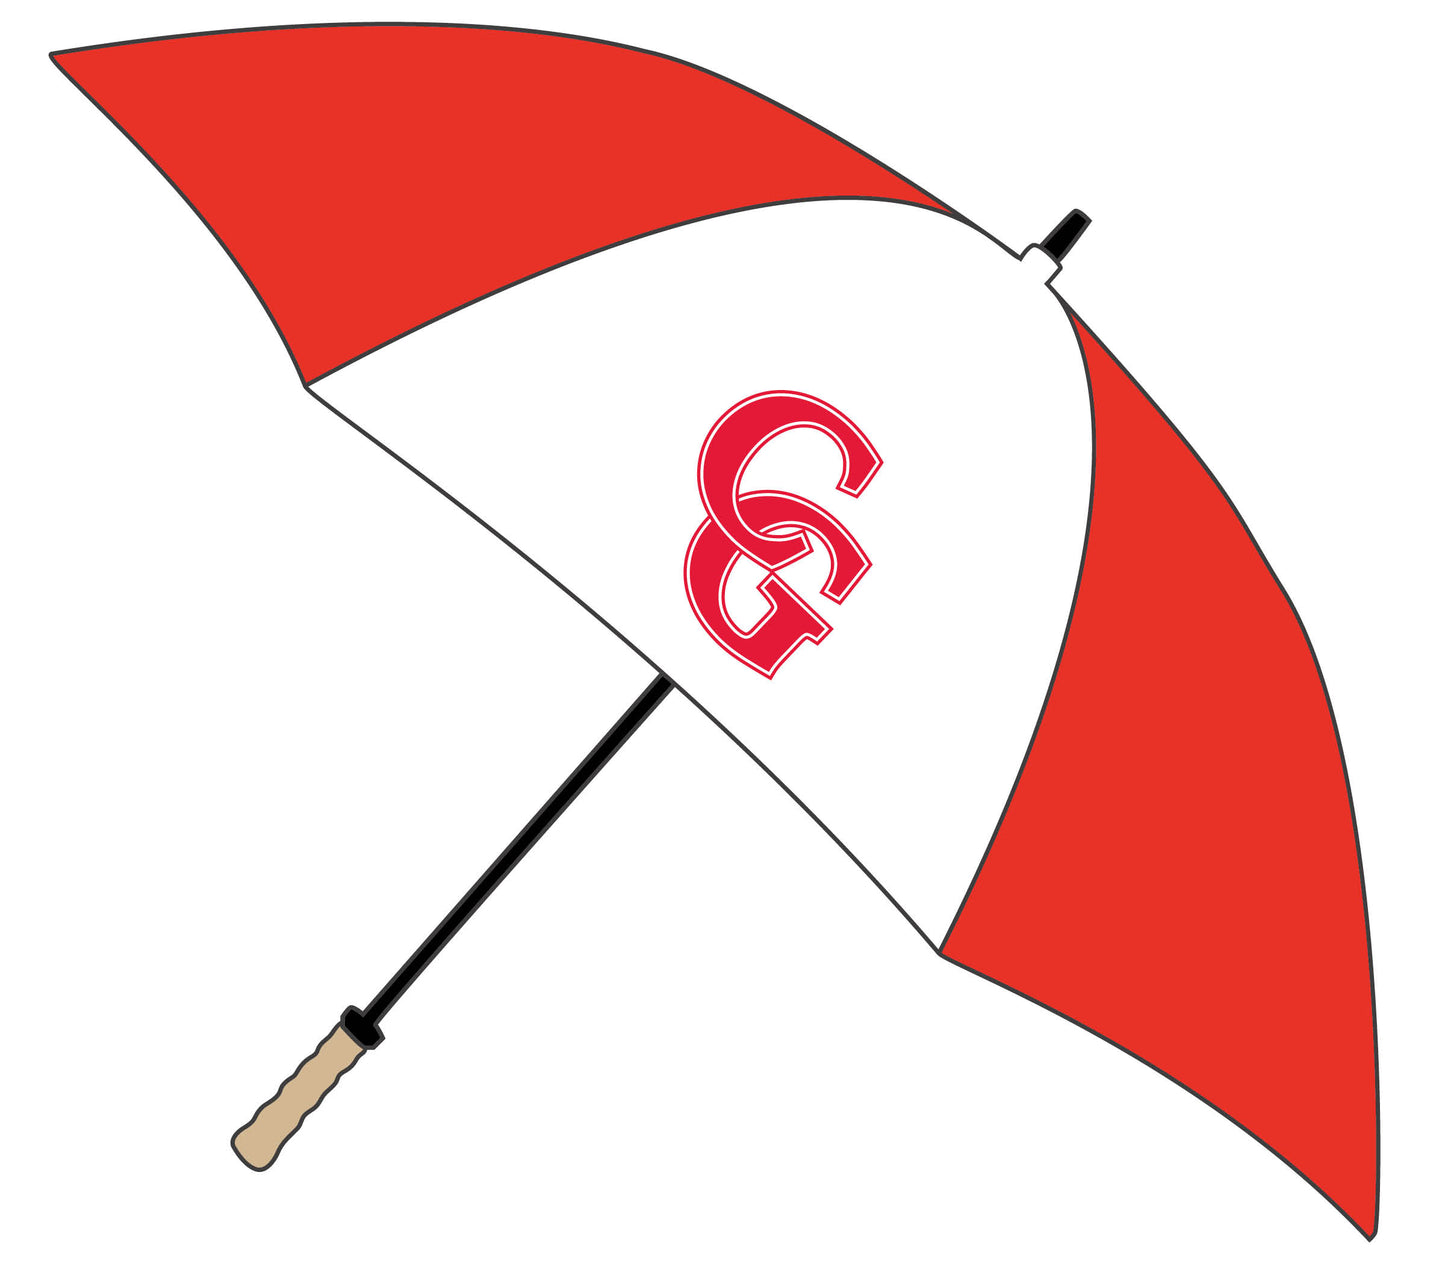 CG Golf Umbrella